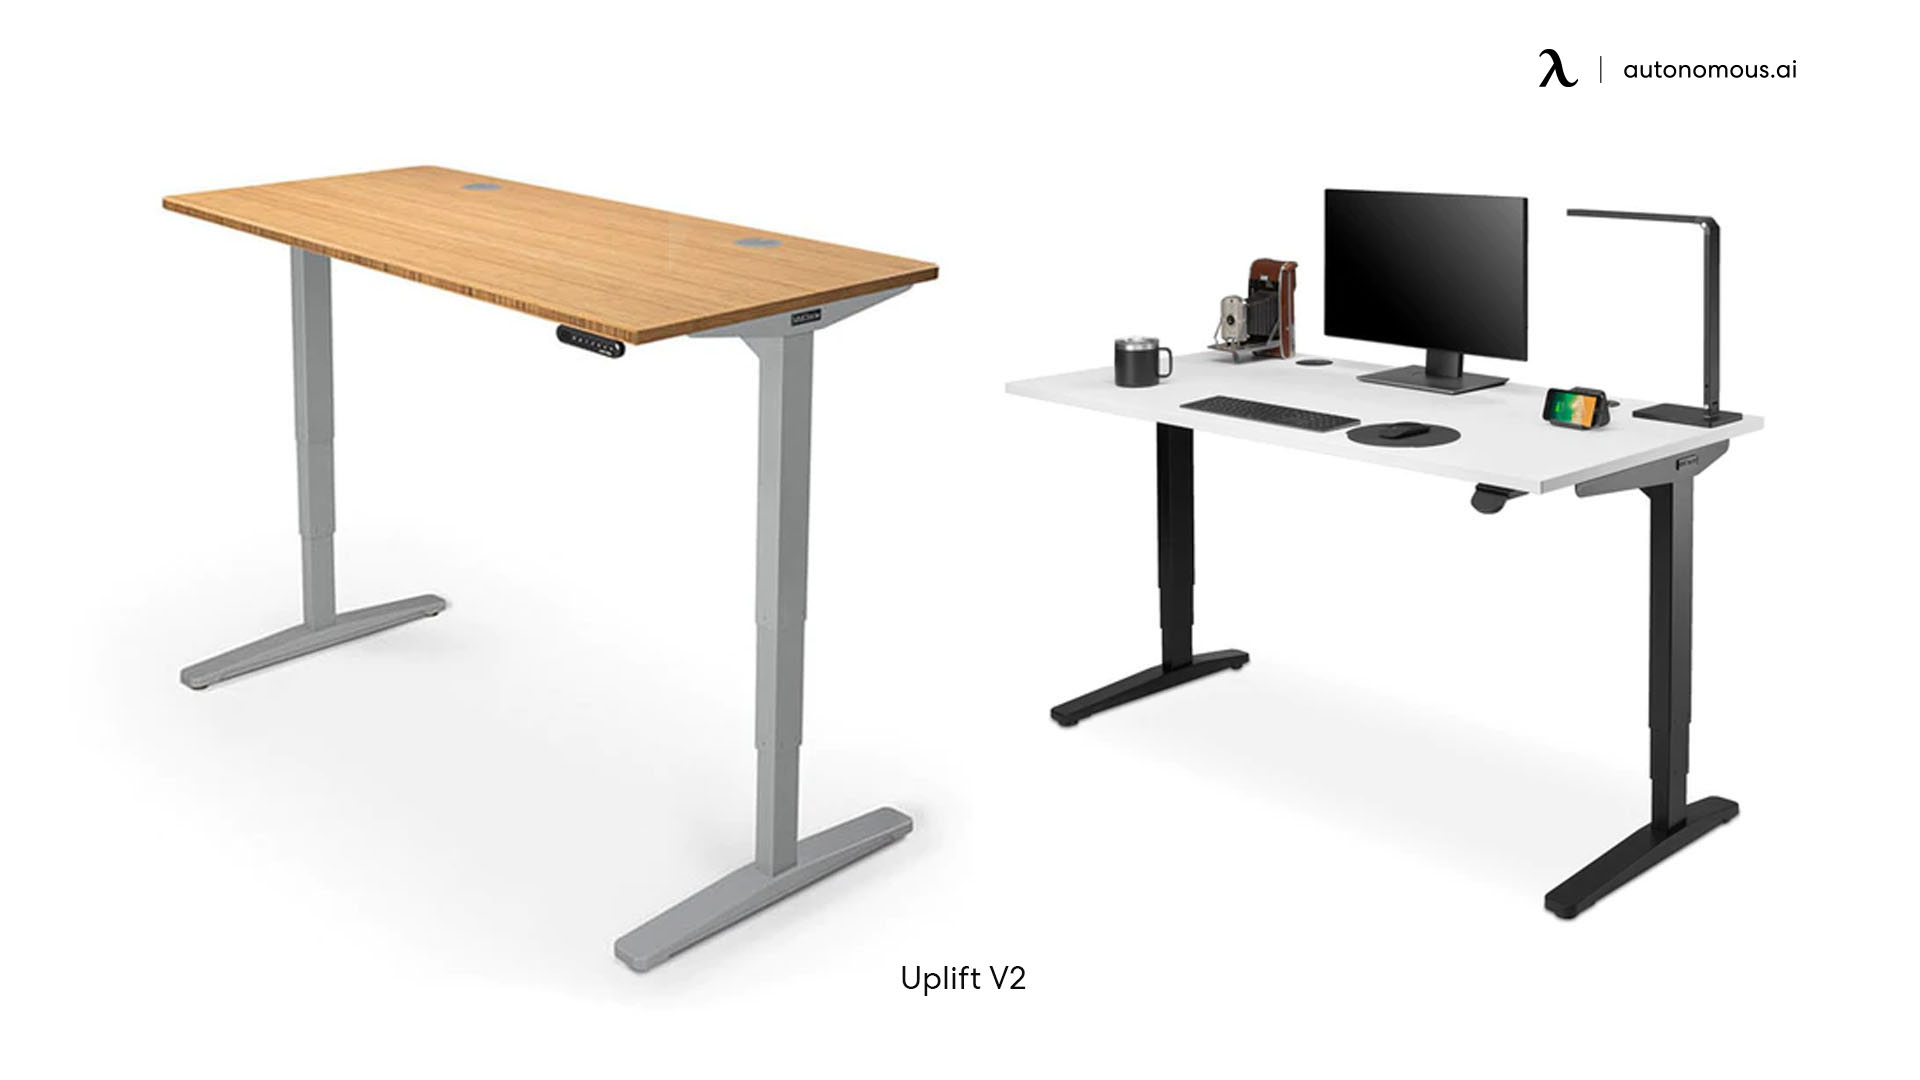 Uplift V2 reclaimed wood desk